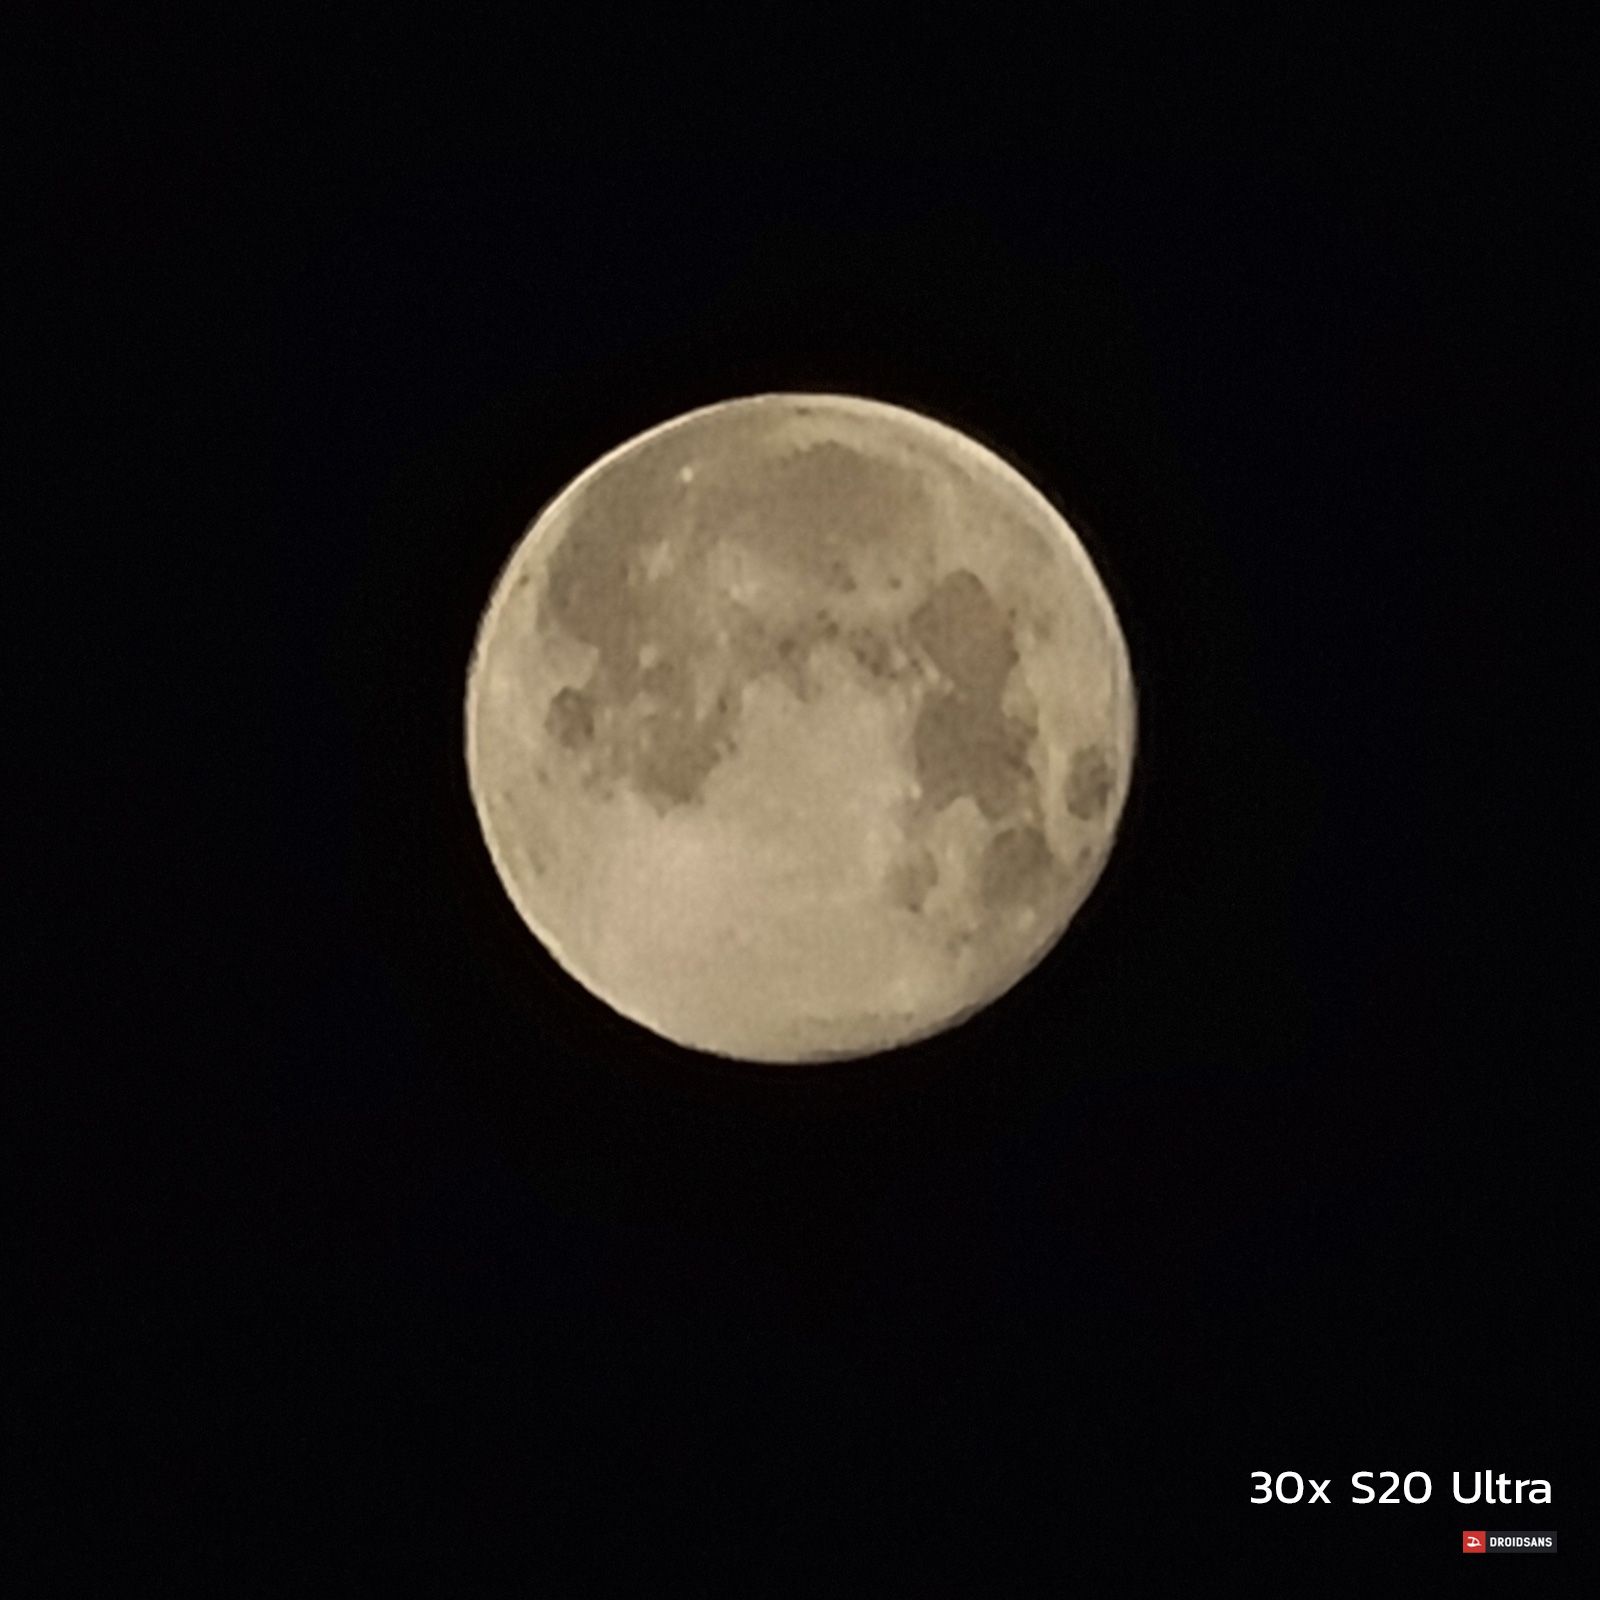 ถ่ายภาพพระจันทร์ Super Moon จาก 3 มือถือเรือธง Huawei P40 Pro, OPPO Find X2 Pro และ Galaxy S20 Ultra